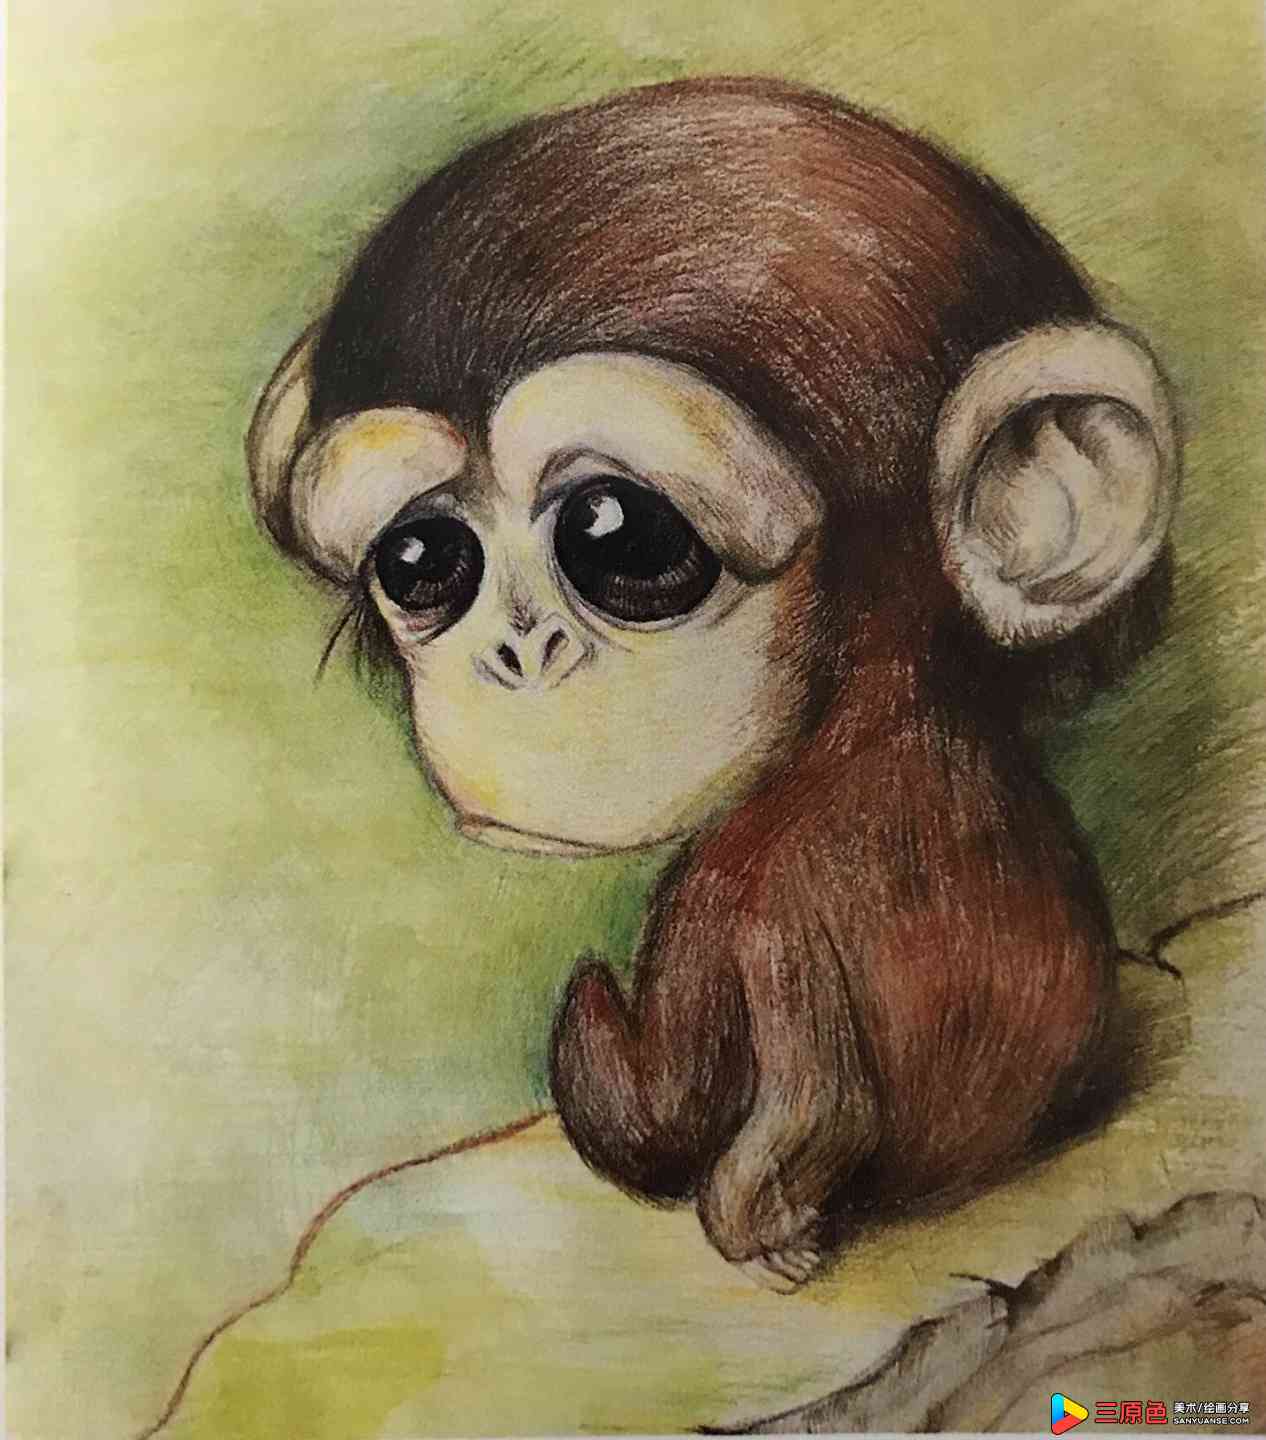 作品以一只可爱的小猴为主体，构图适合，主体突出形象锣目，可溶性彩铅表达深入具体，有一定的美感。